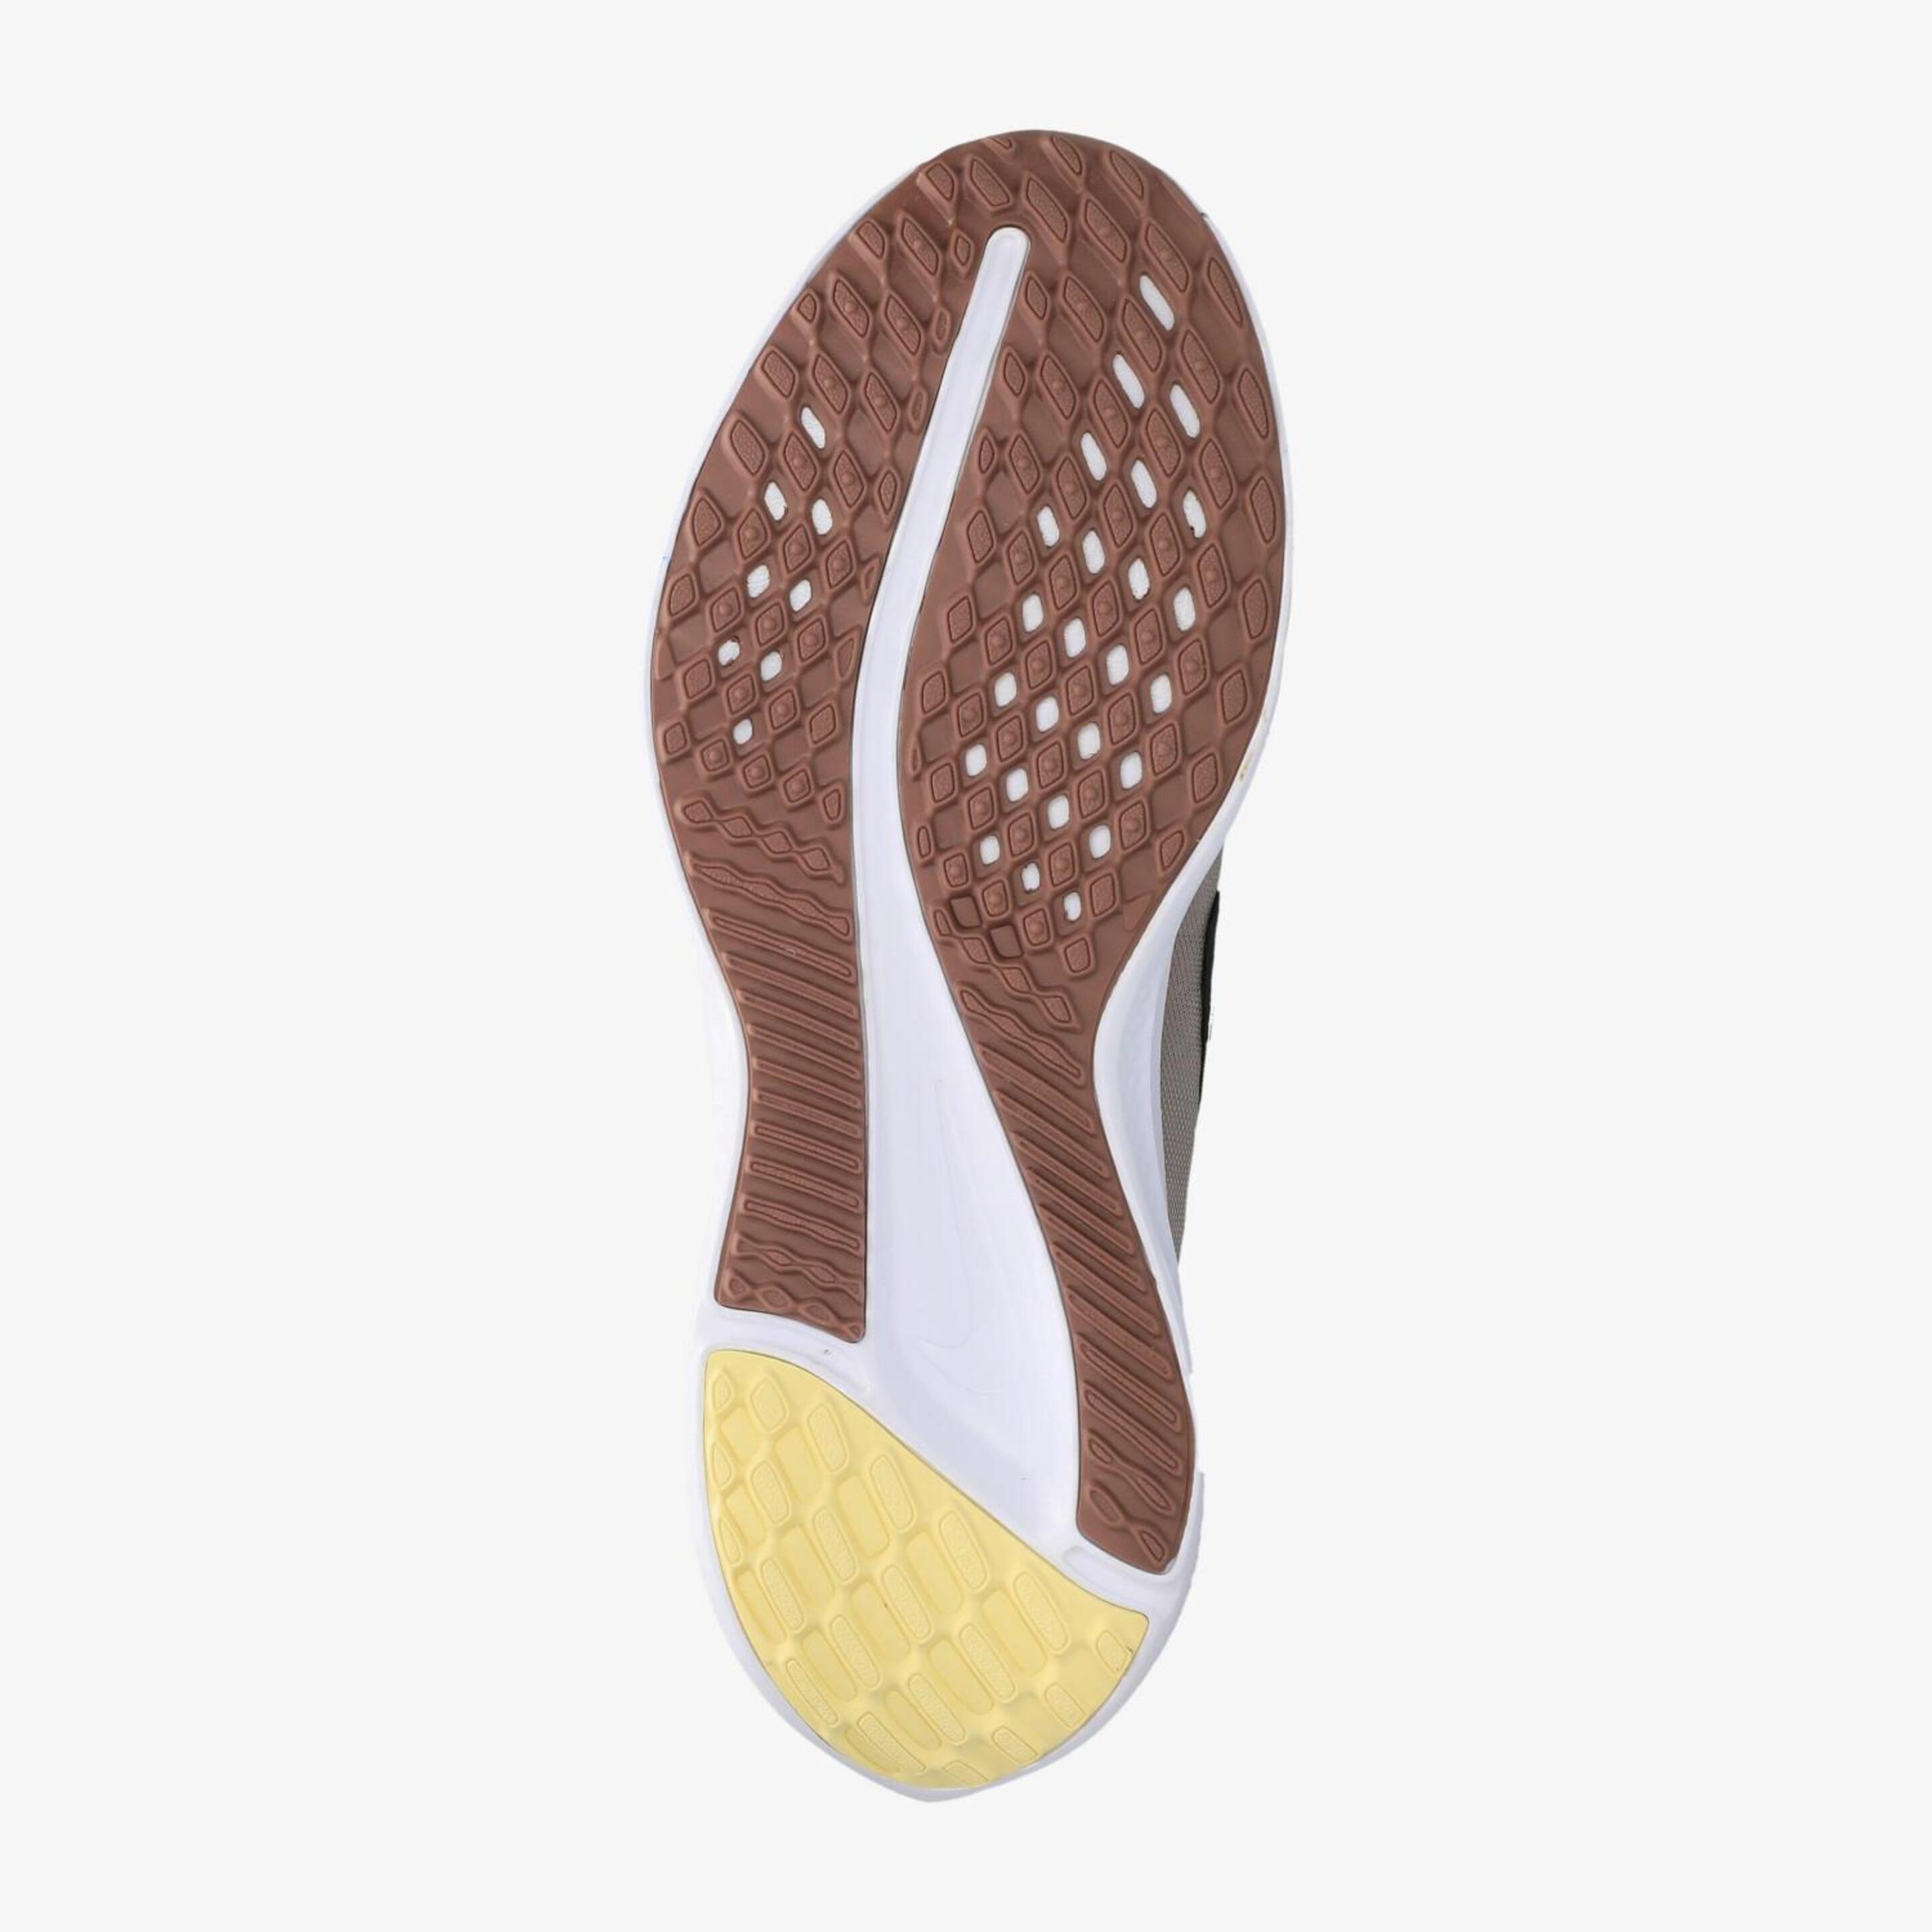 Nike Quest 5 - Malva - Zapatillas Running Mujer